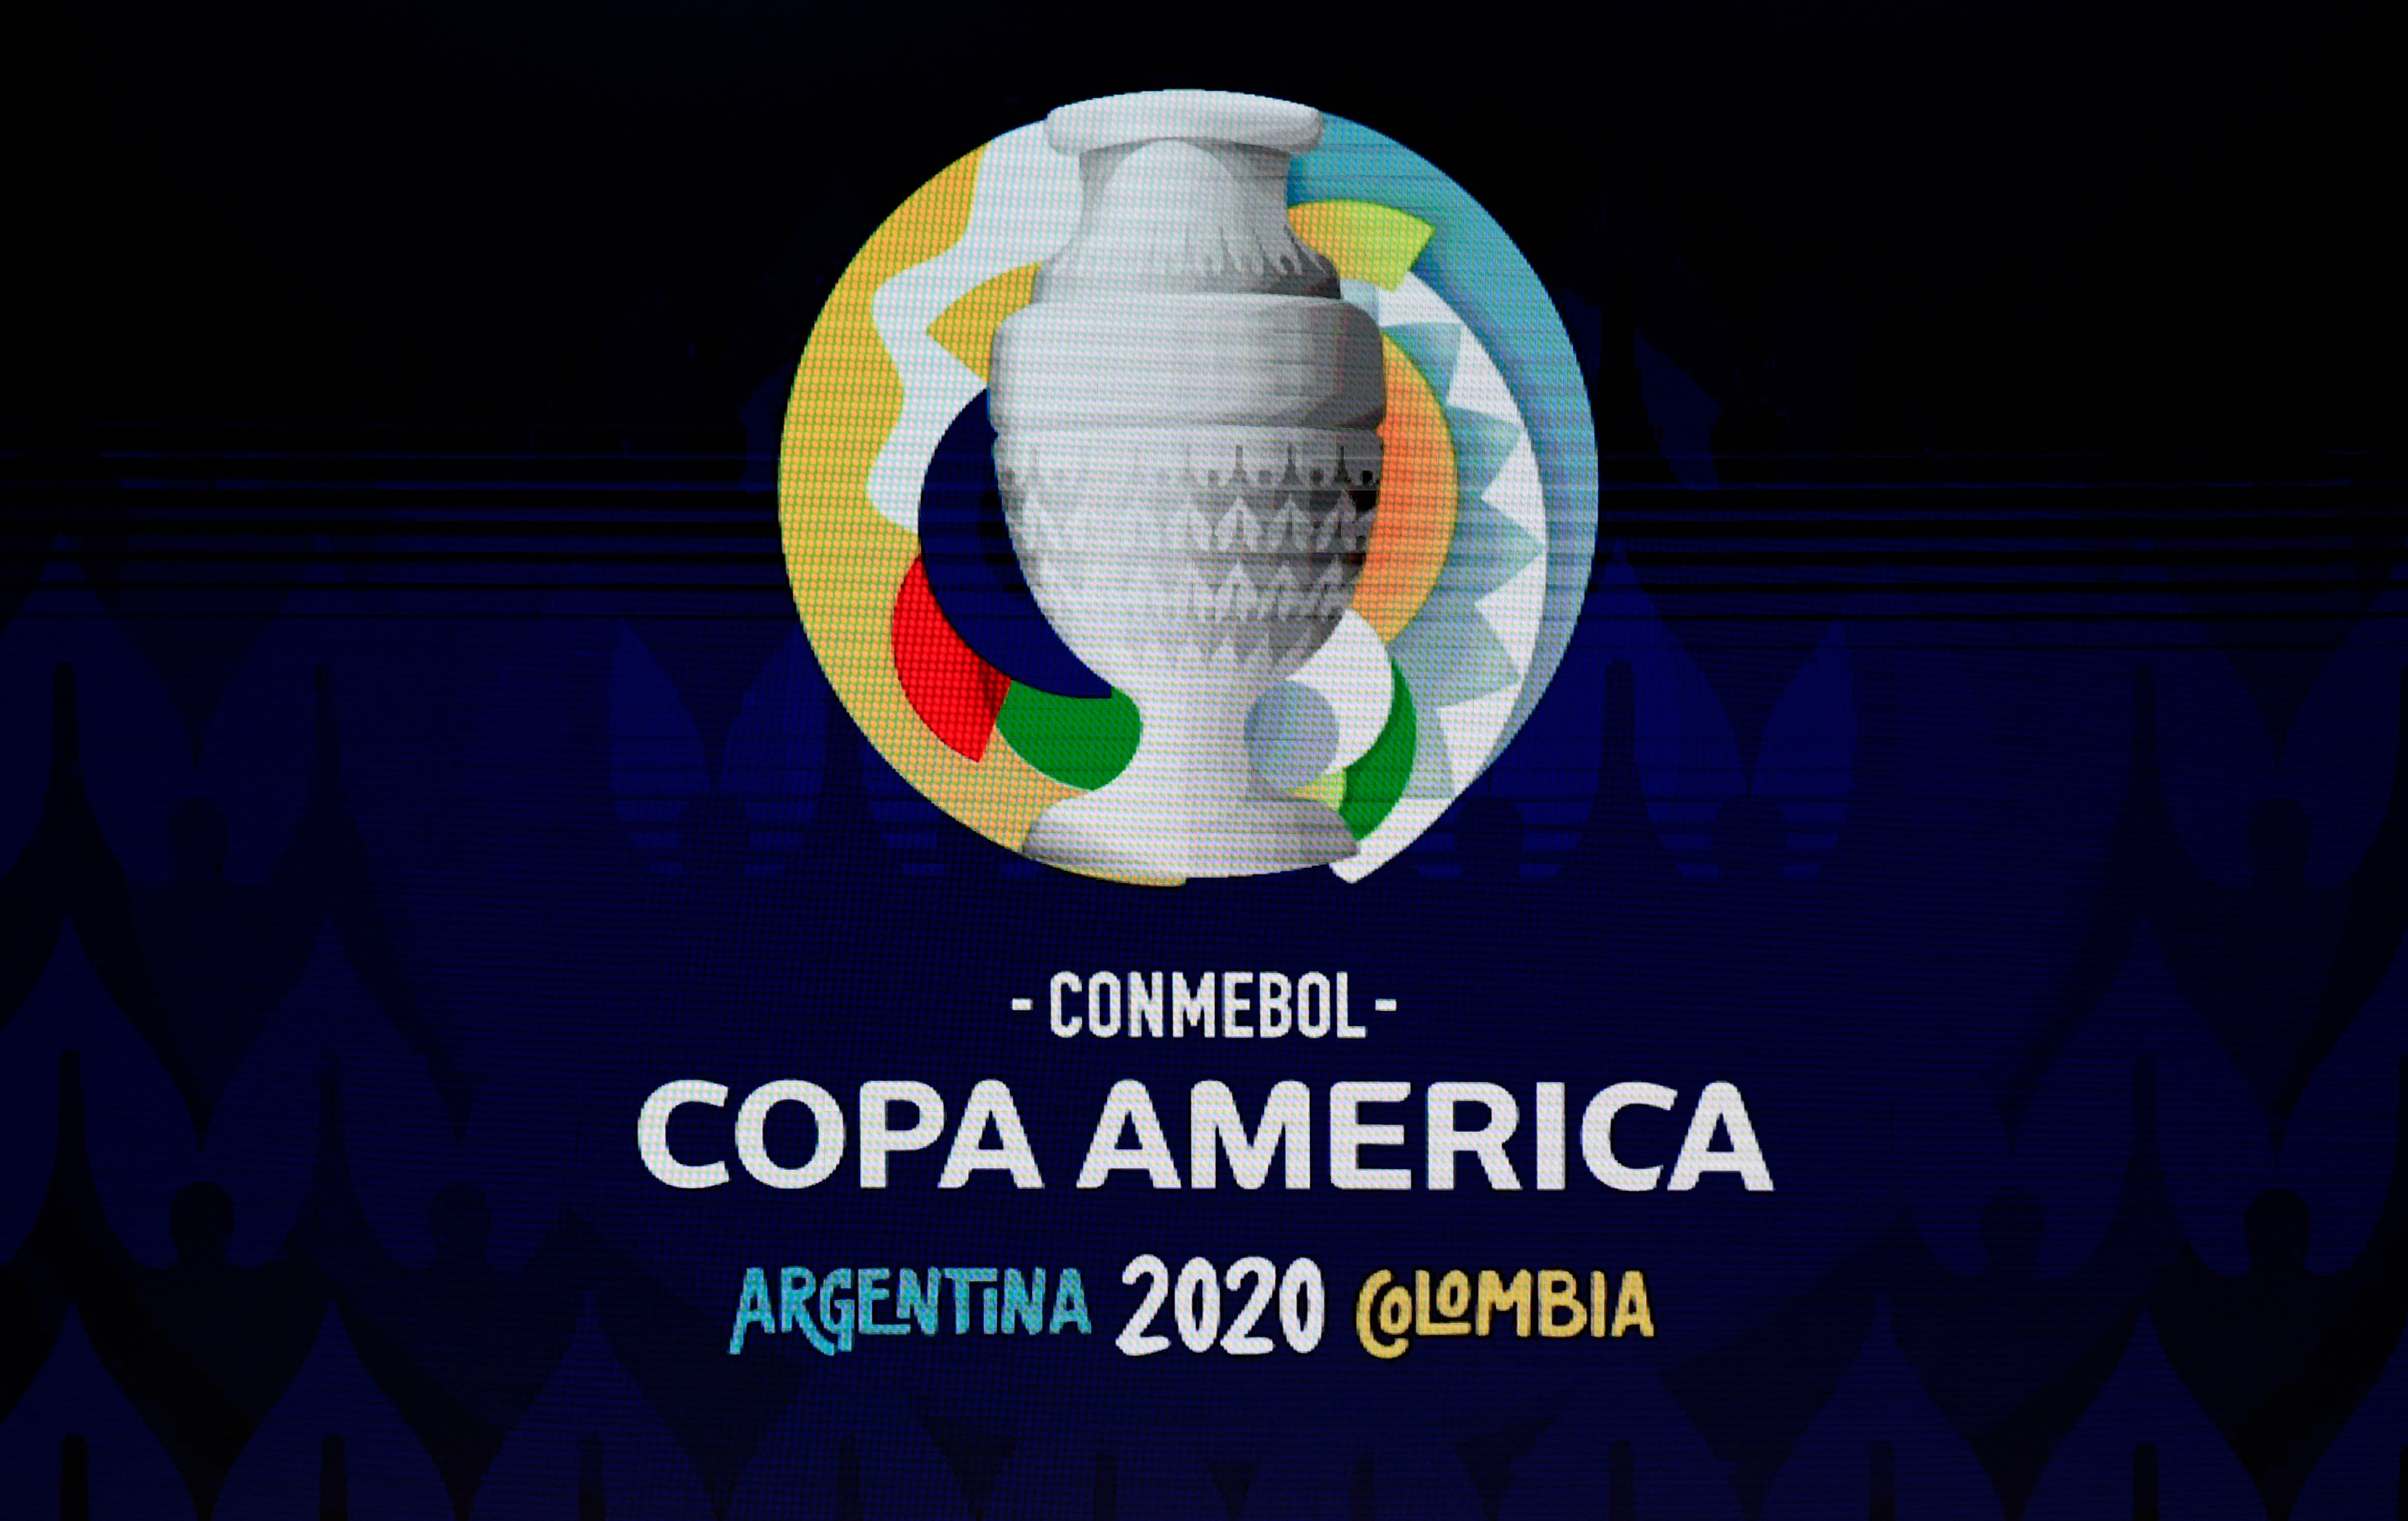 Tudo pronto! O calendário da CONMEBOL Copa América 2024™